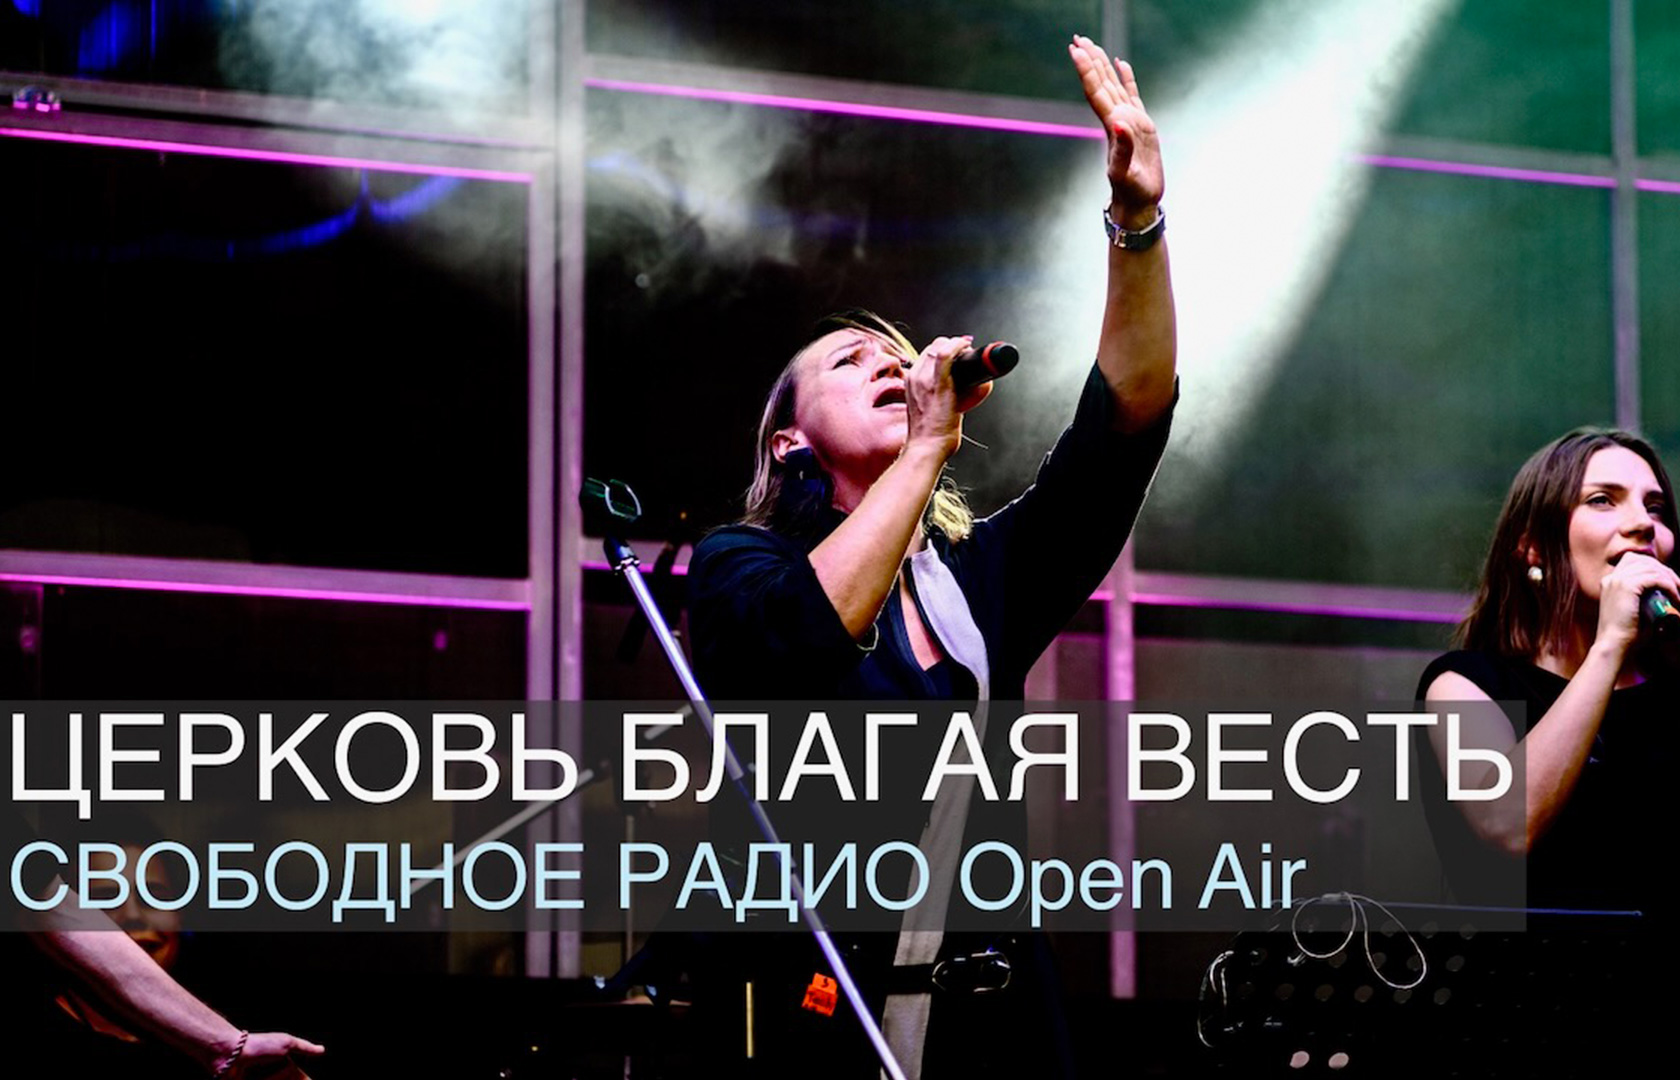 Новое видео Фестиваля «Свободное радио Open Air»